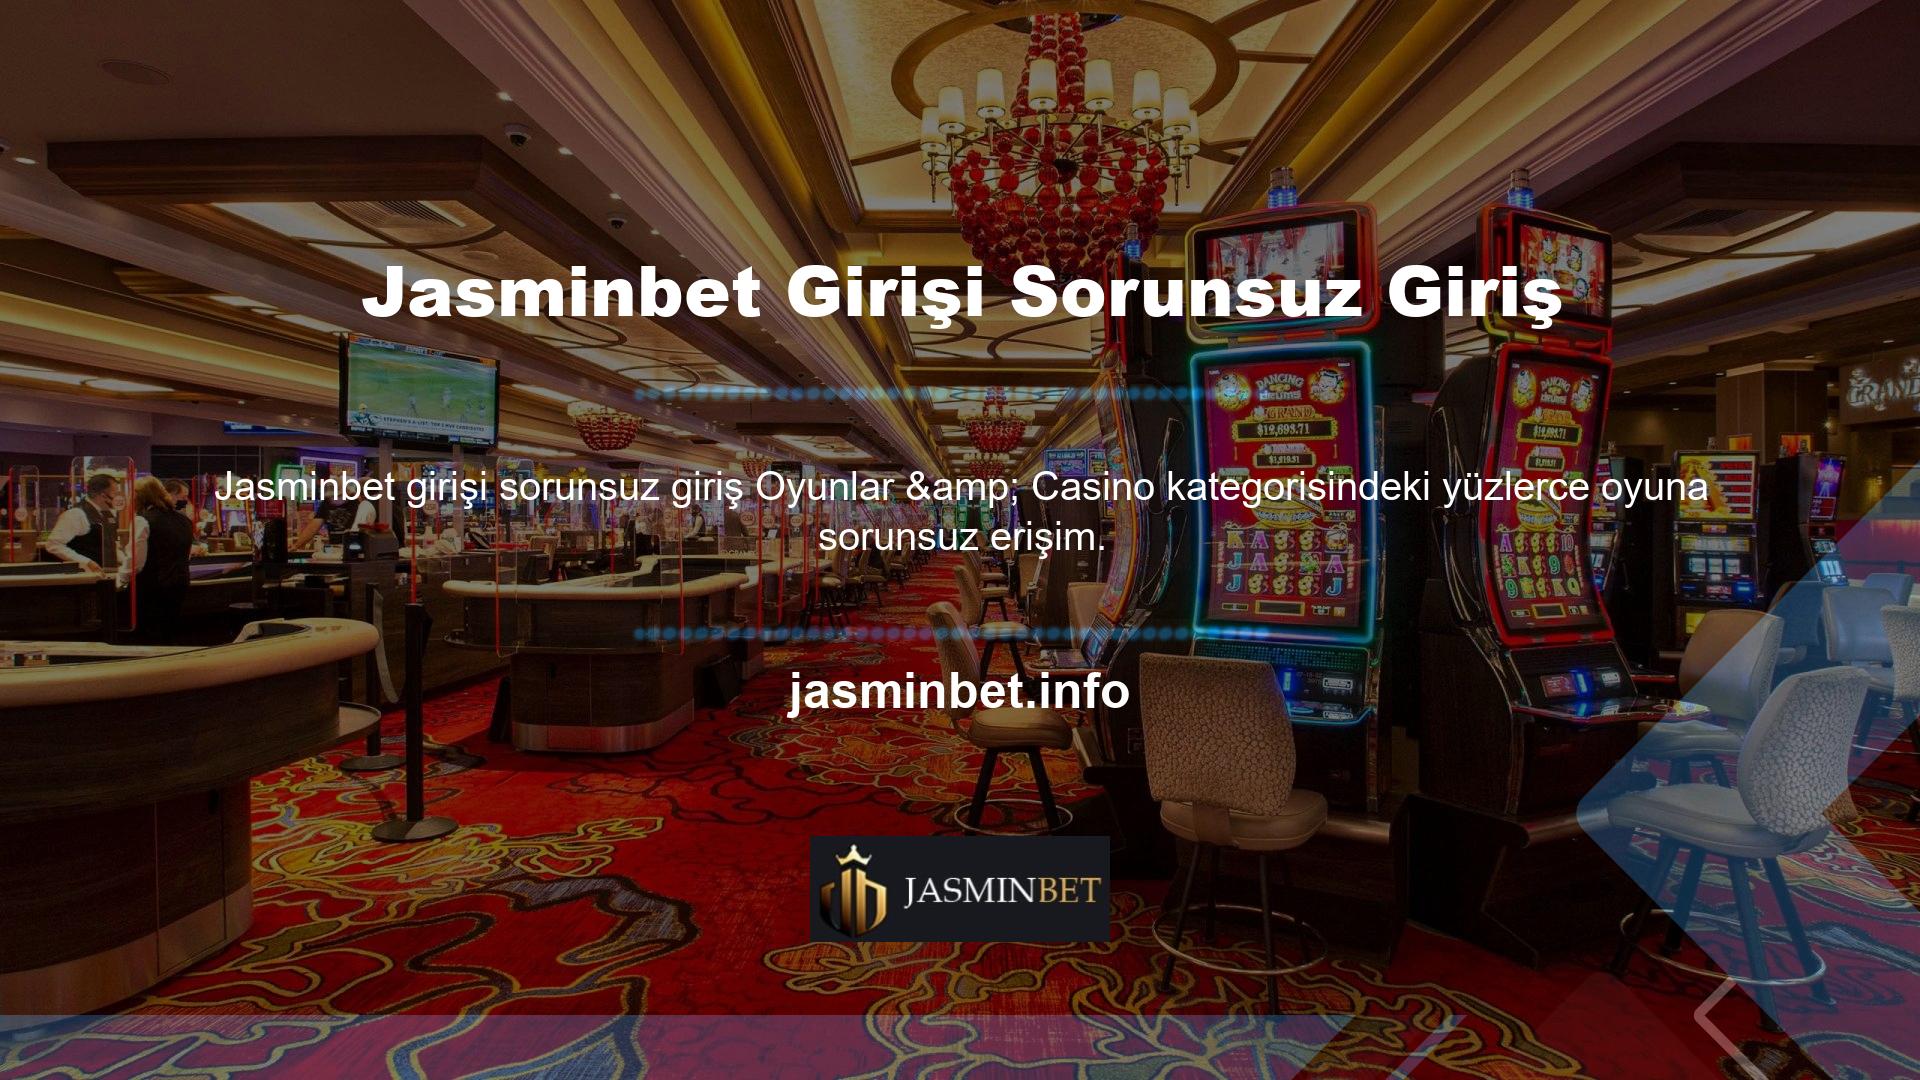 Jasminbet, çok çeşitli bahis seçenekleri sunan, sektörde bilinen bir bahis sitesidir